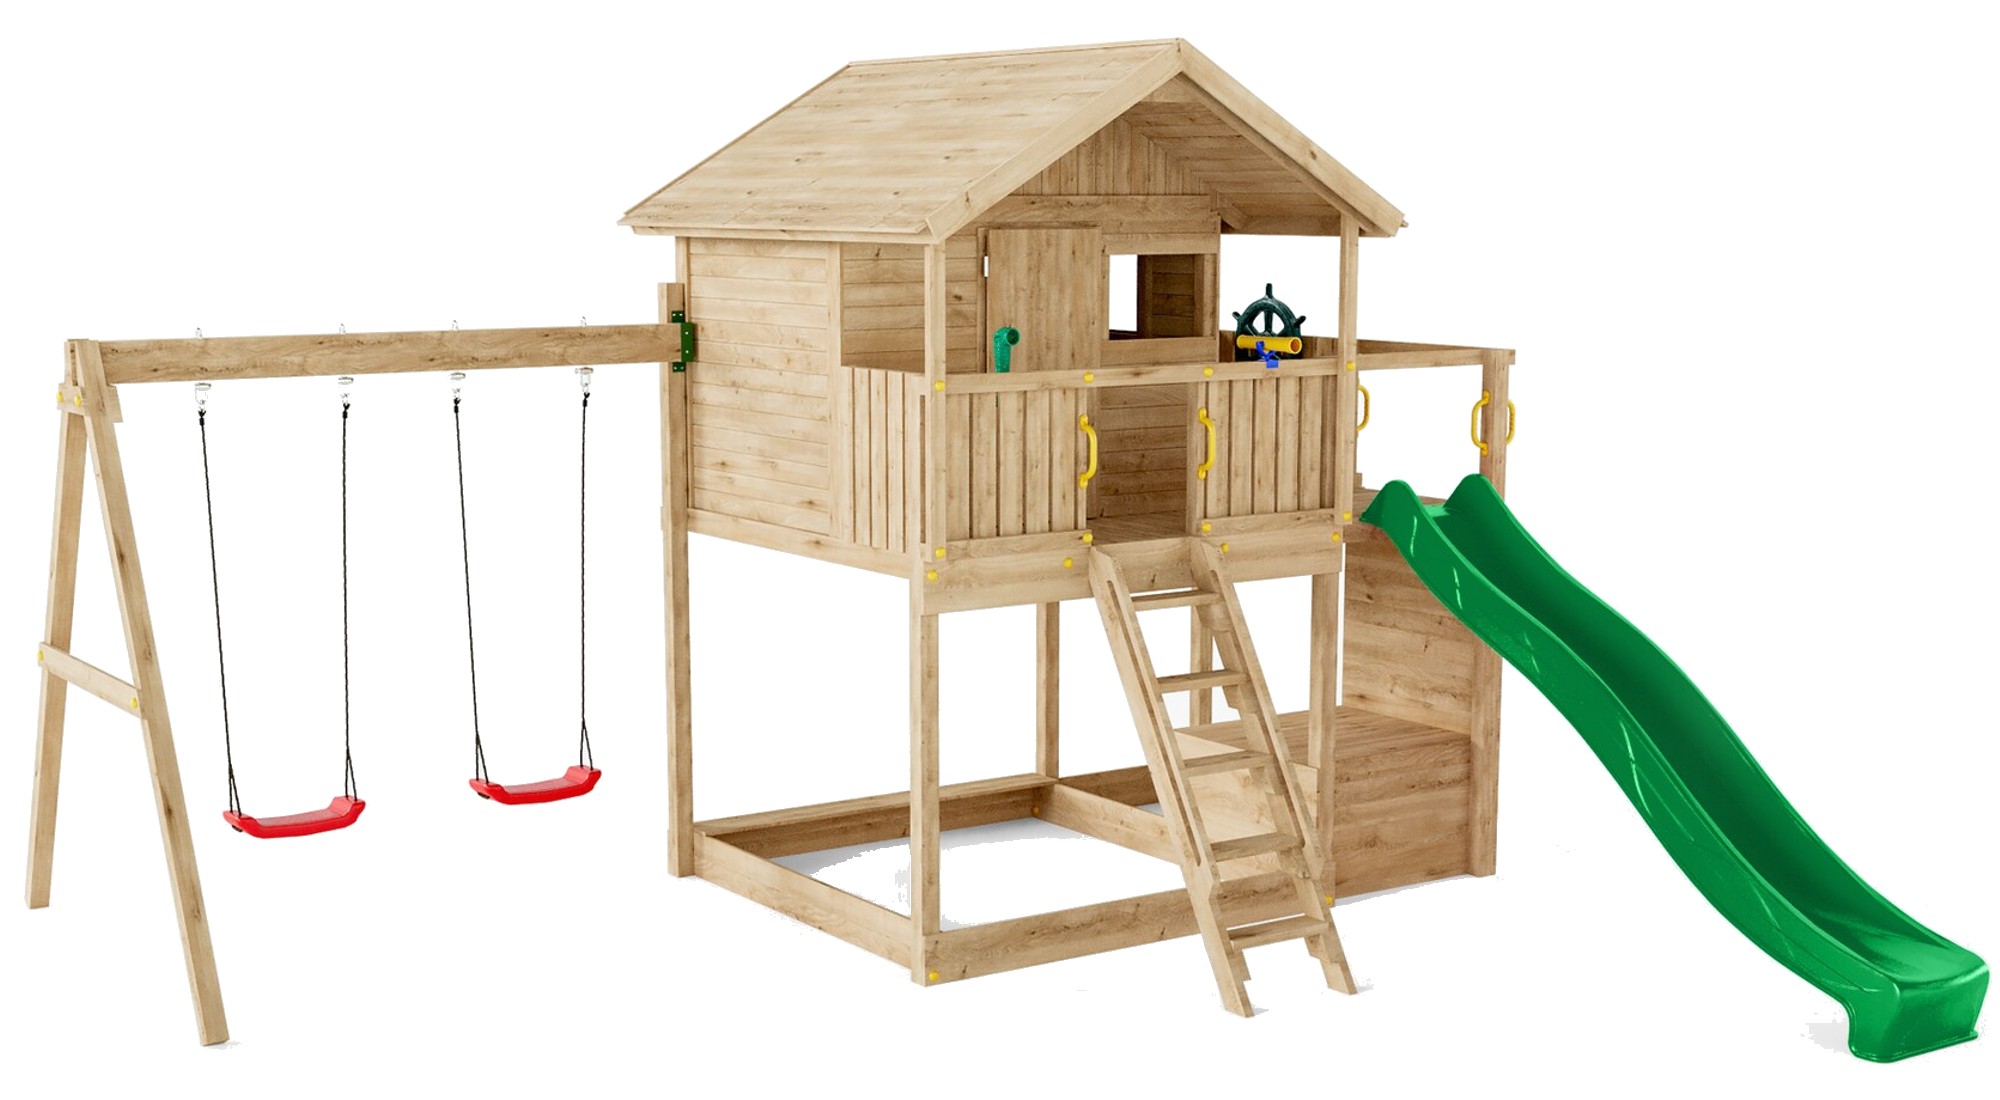 Plac zabaw drewniany ogrodowy Galaxy Sunshine KDI domek, 2x hutawka, zjedalnia, skrzynia piknikowa, cianka do wspinaczki, schodki, akcesoria